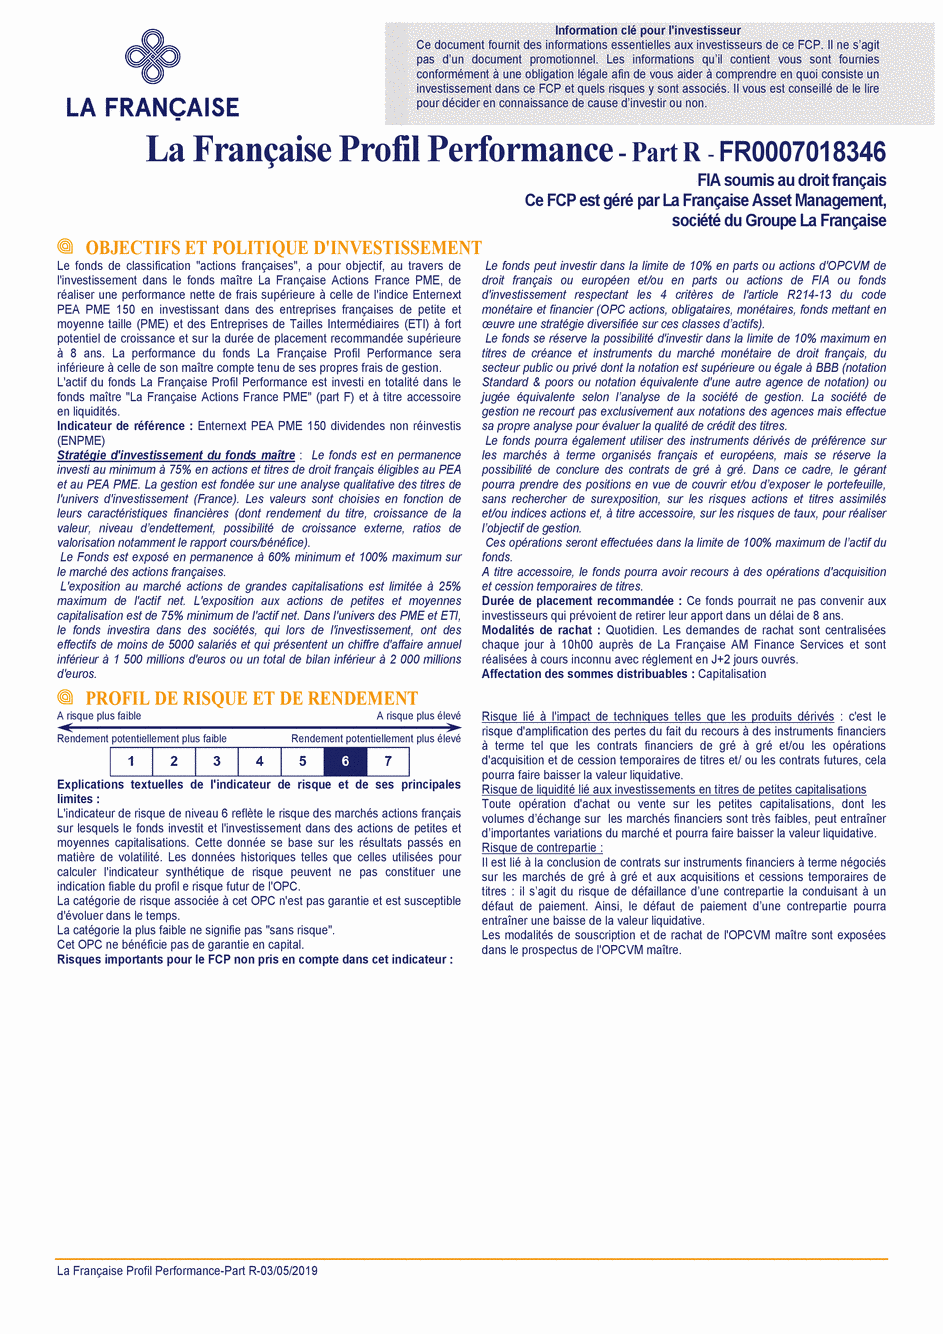 DICI LA FRANCAISE PROFIL PERFORMANCE R - 03/05/2019 - Français